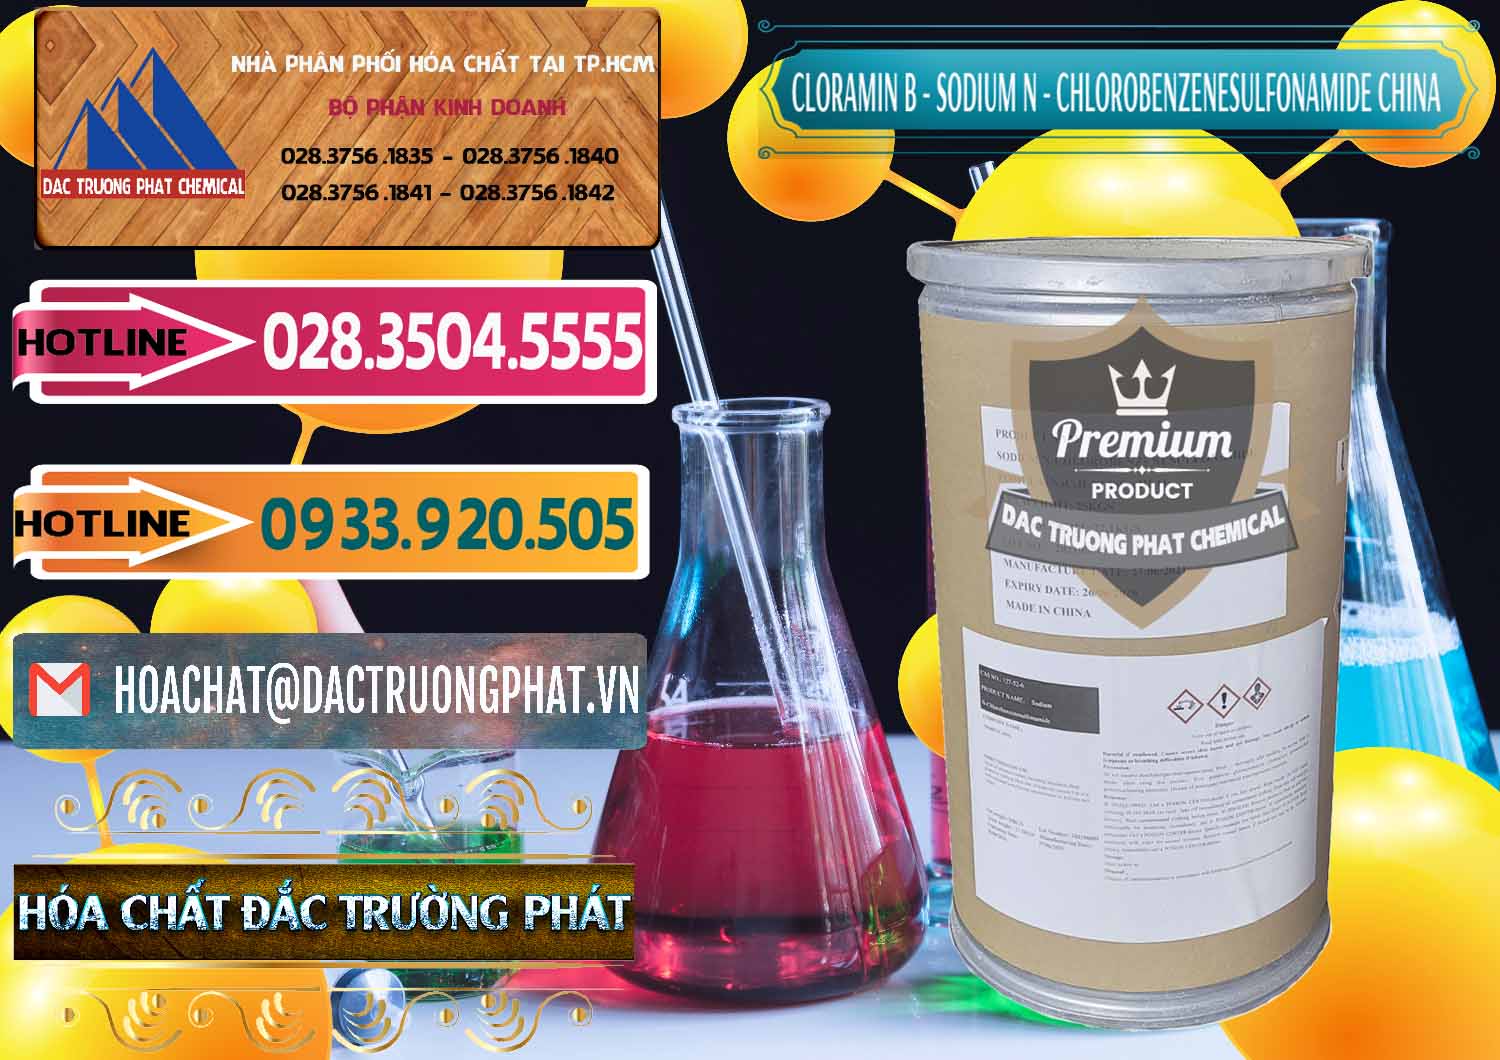 Cty chuyên phân phối ( bán ) Cloramin B Khử Trùng, Diệt Khuẩn Trung Quốc China - 0298 - Cung cấp & phân phối hóa chất tại TP.HCM - dactruongphat.vn